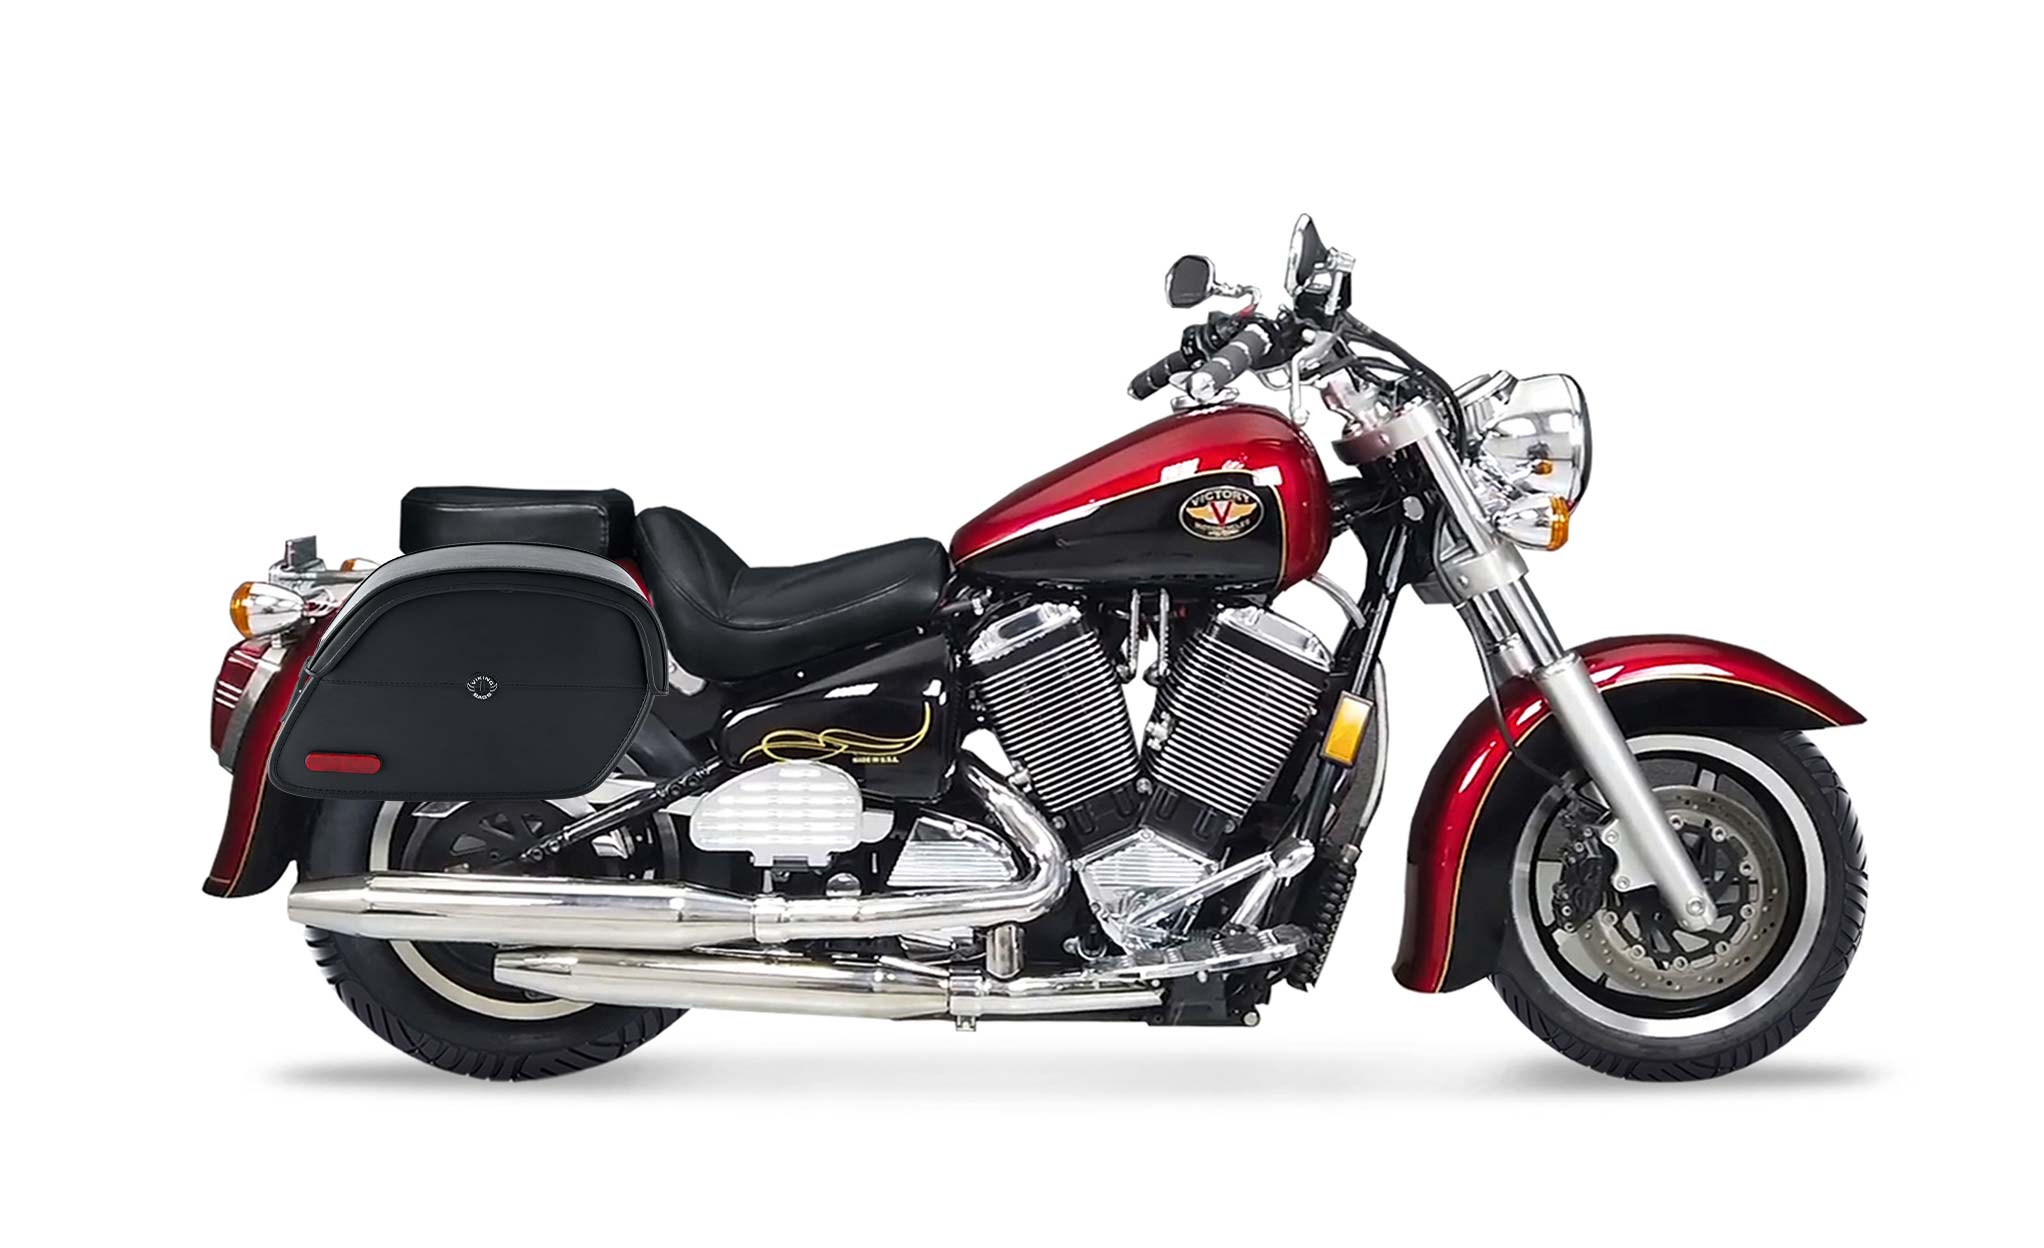 Viking California Large Victory V92C Leather Motorcycle Saddlebags on Bike Photo @expand